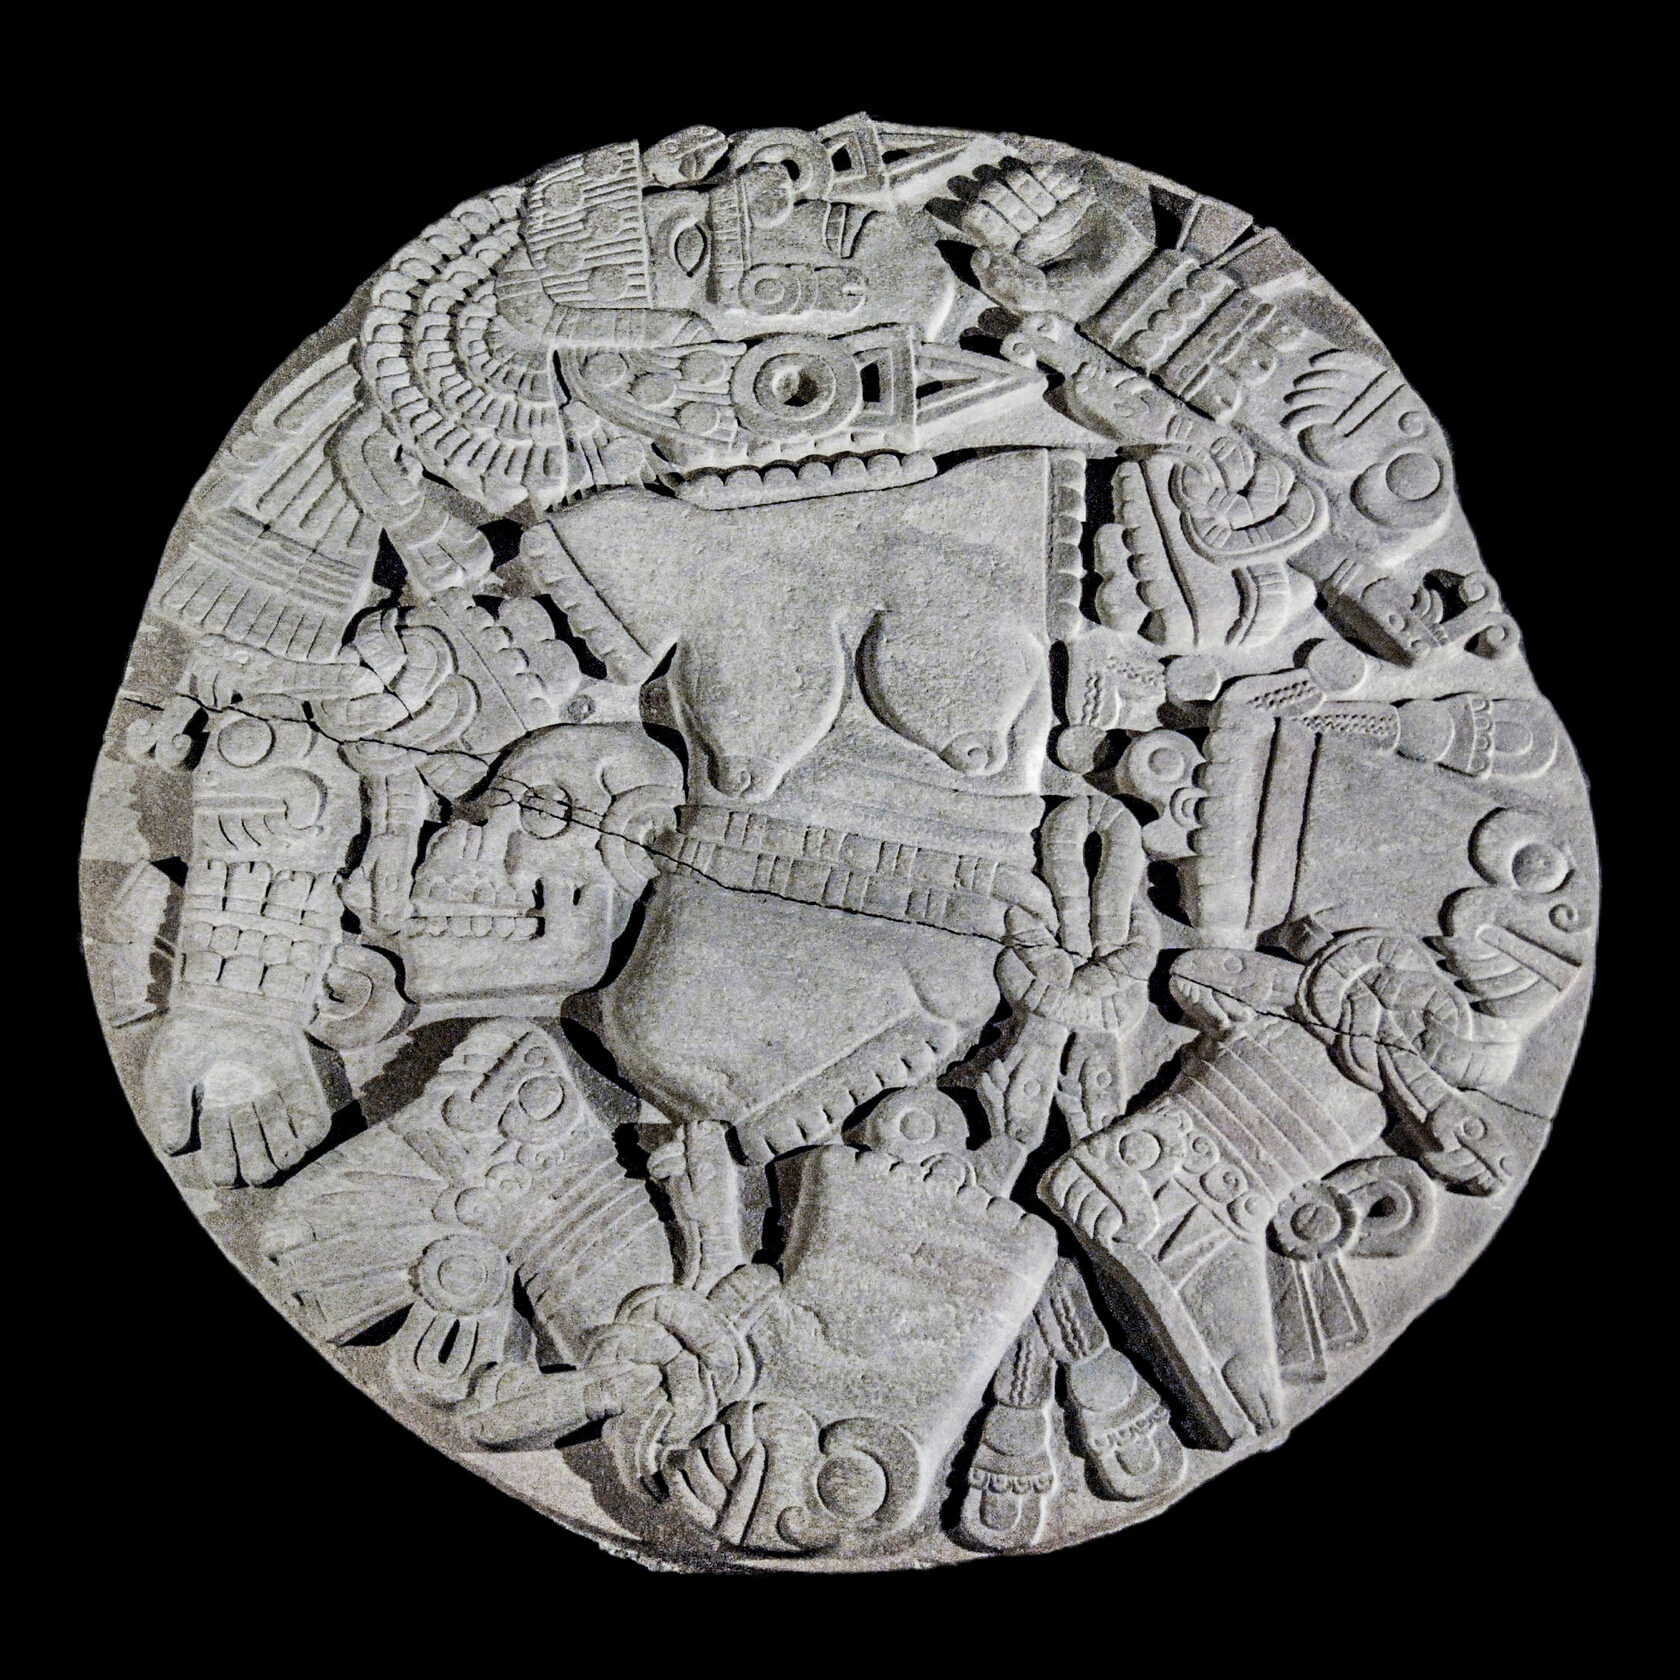 Камень Койольшауки. Ацтеки, примерно 1473 г. н.э. Коллекция Museo del Templo Mayor, Mexico. Dennis Jarvis, 2007.